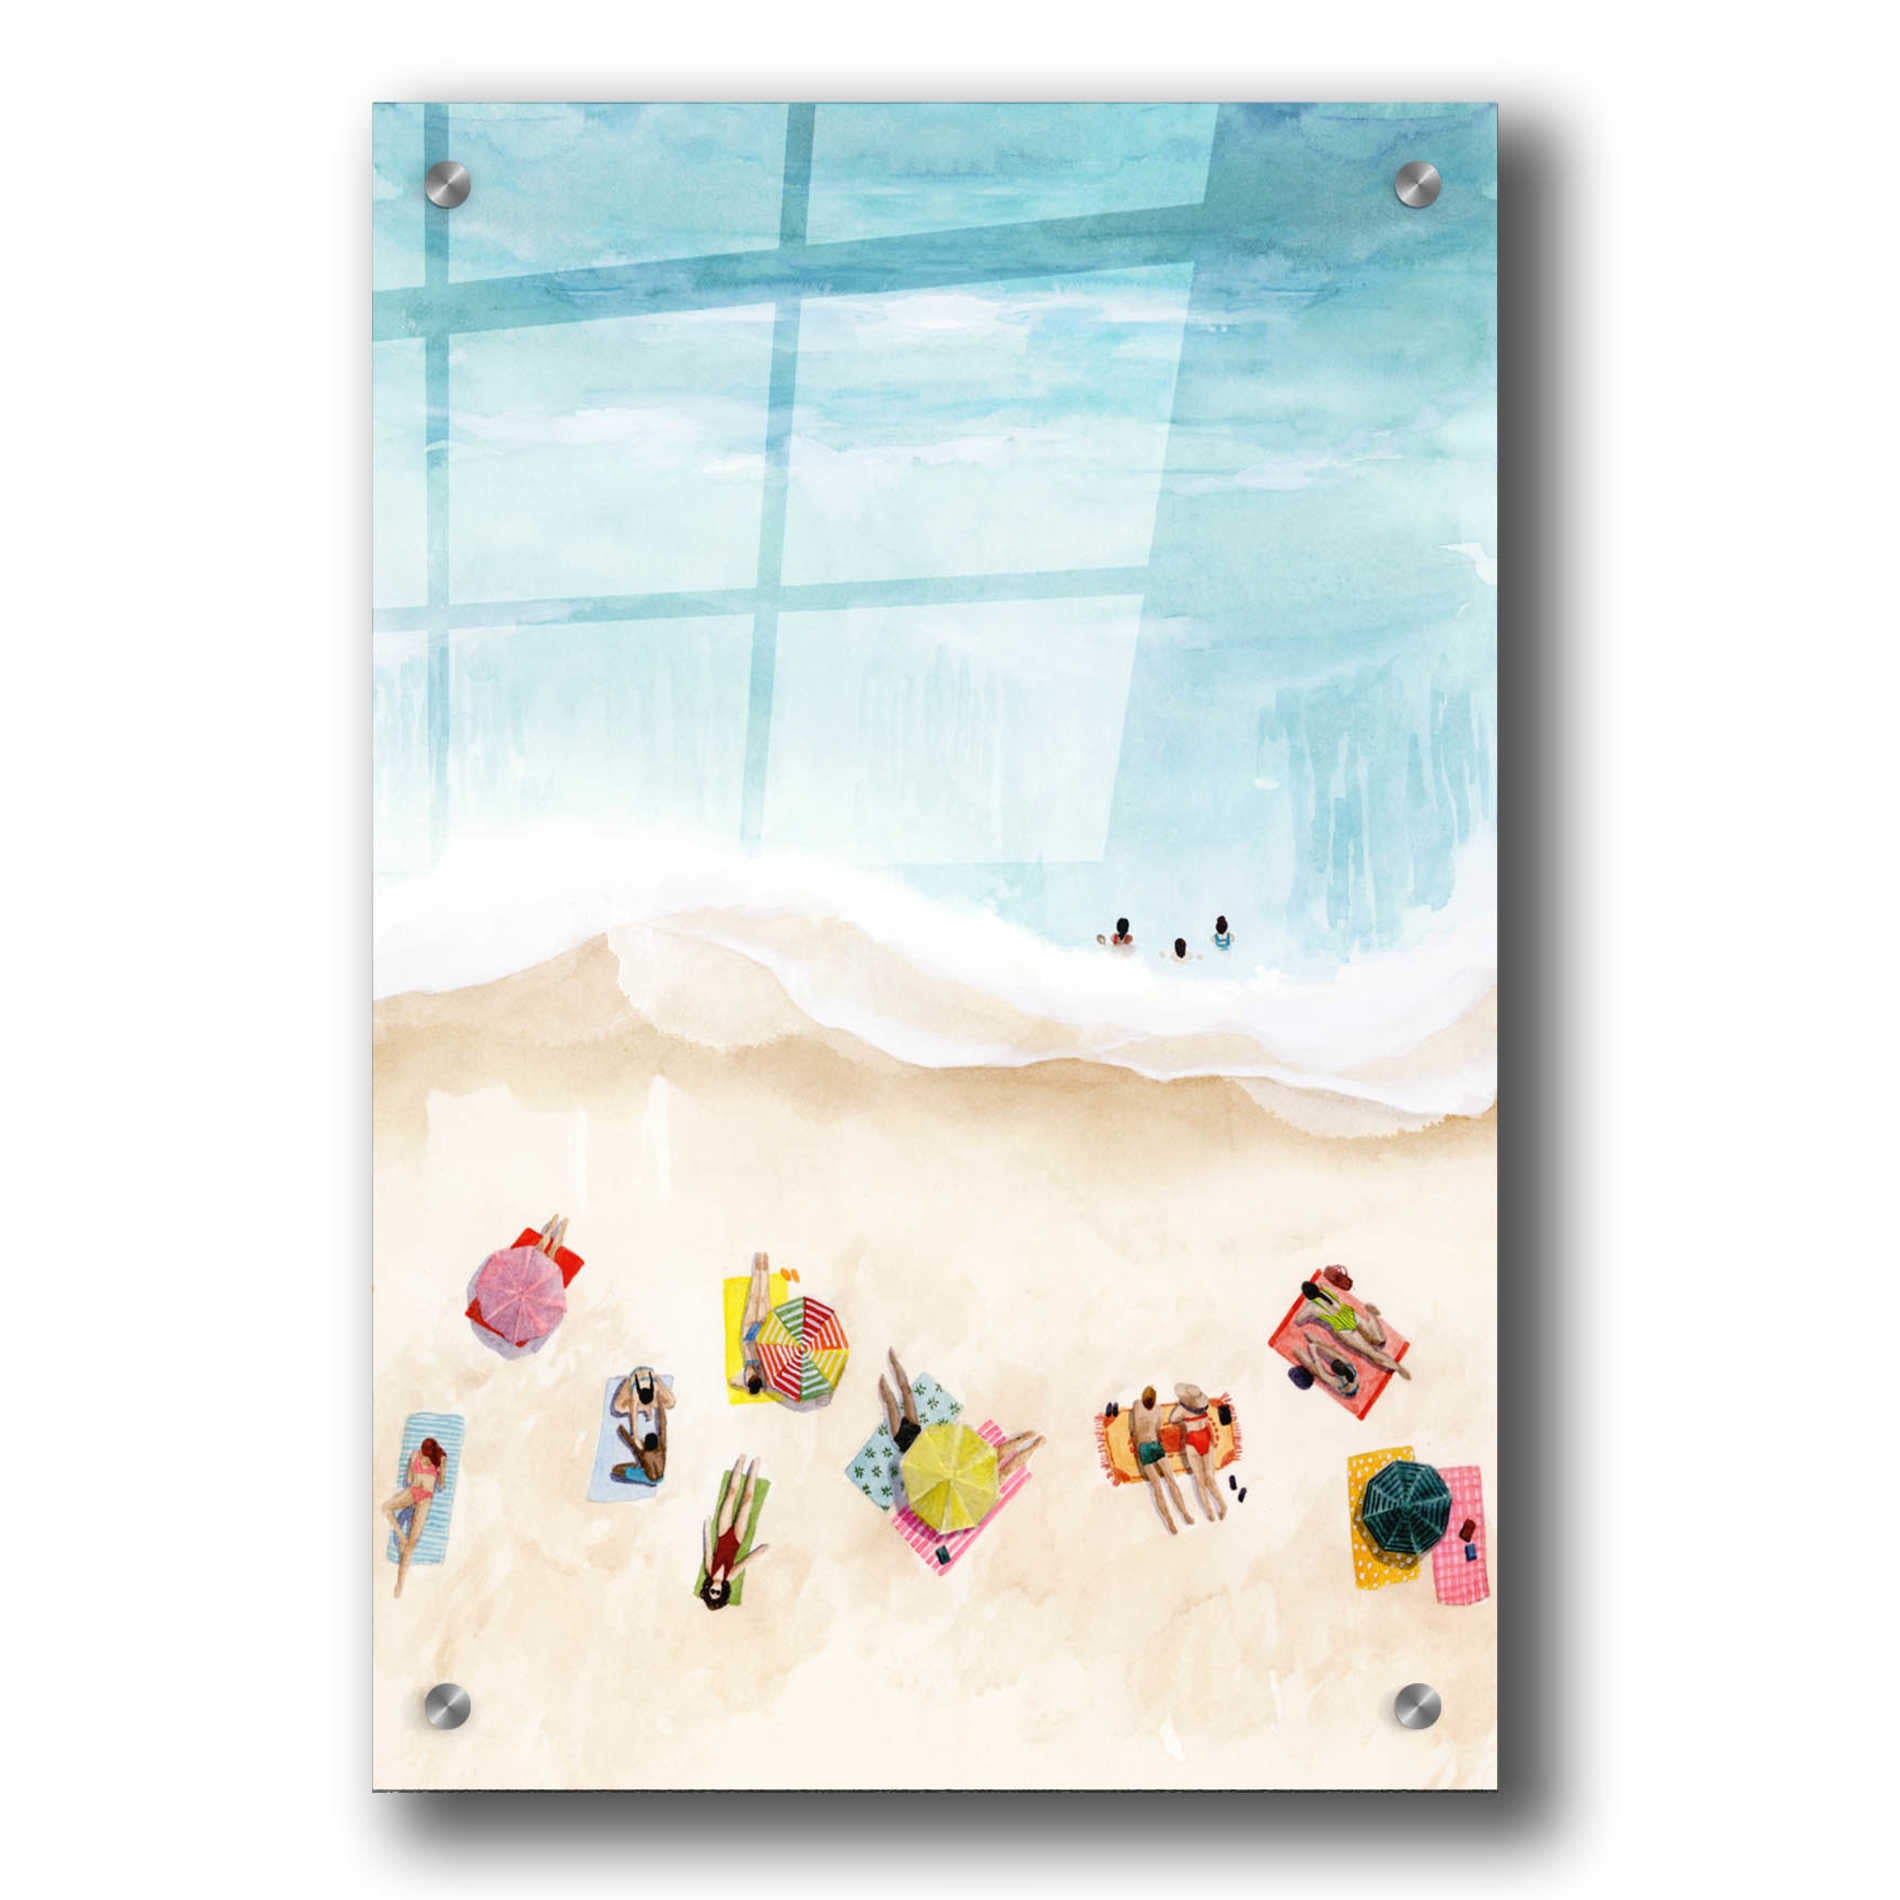 Epic Art 'Beach Week II' by Grace Popp, Acrylic Wall Glass,24x36